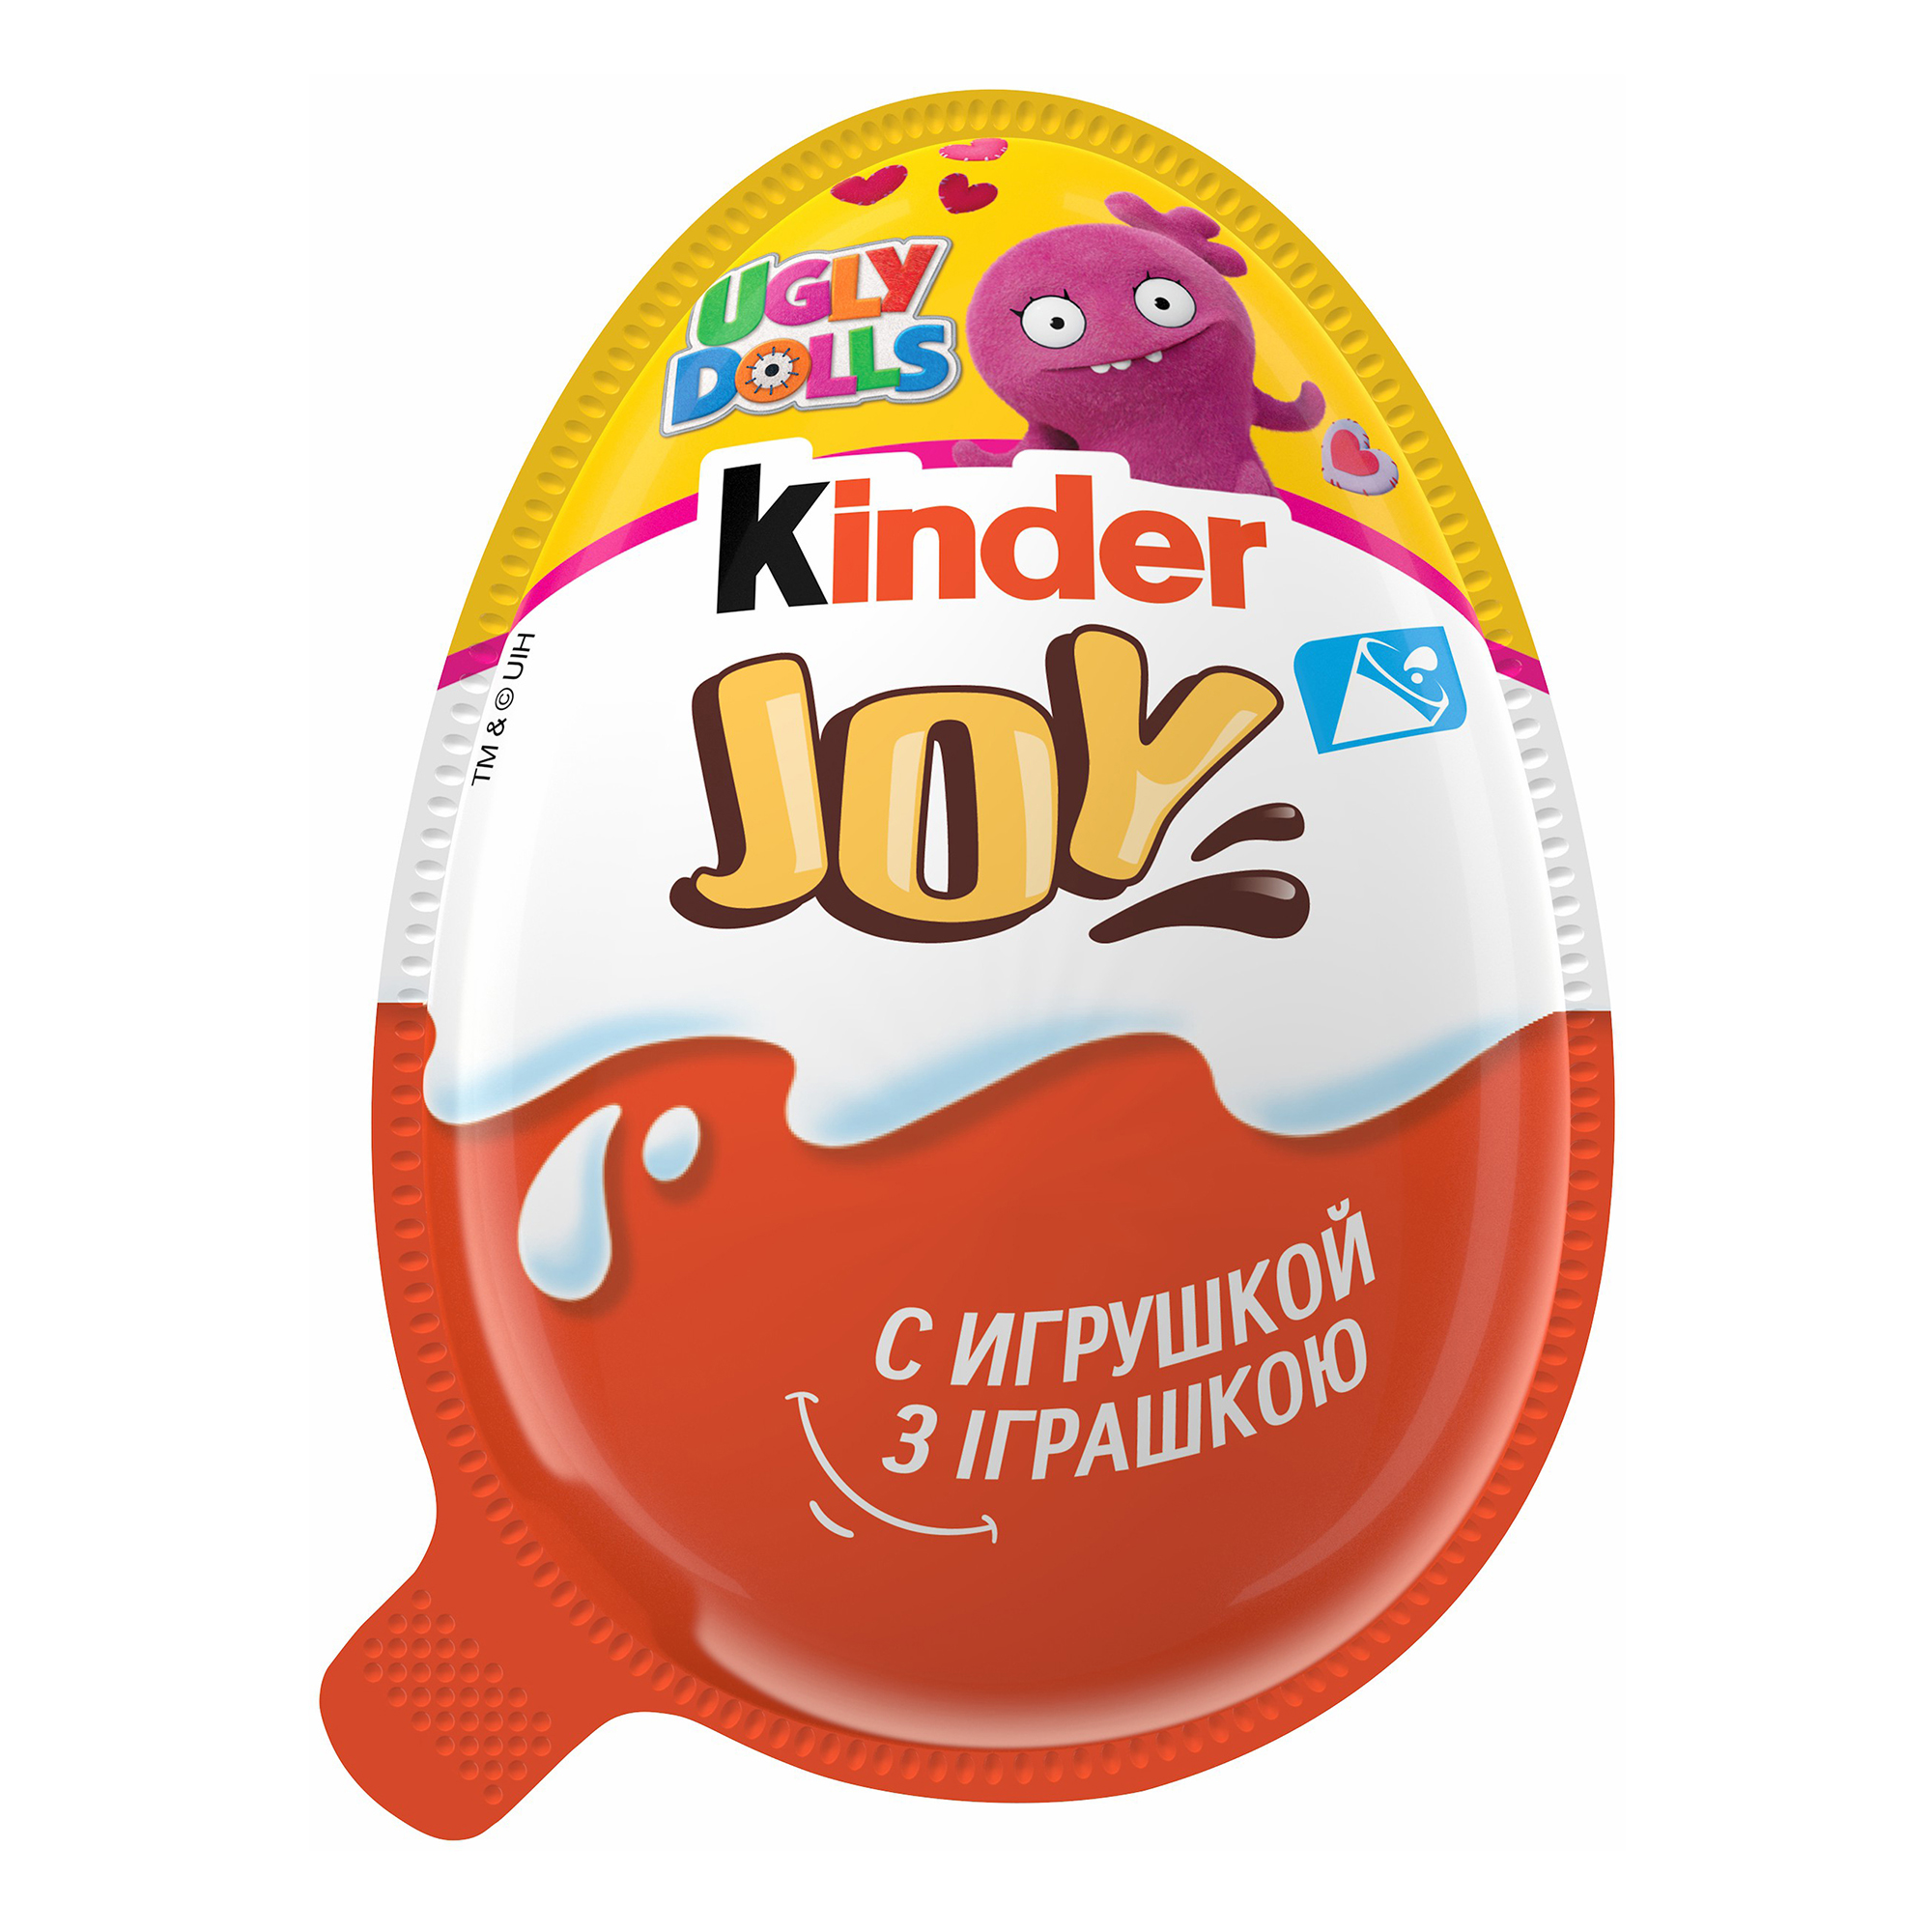 Яйцо с игрушкой купить. Яйцо шоколадное kinder Джой 20г. Яйцо kinder Joy шоколадное, 20 г. Kinder Joy (Киндер Джой) для мальчиков. Uglydolls Киндер Джой.